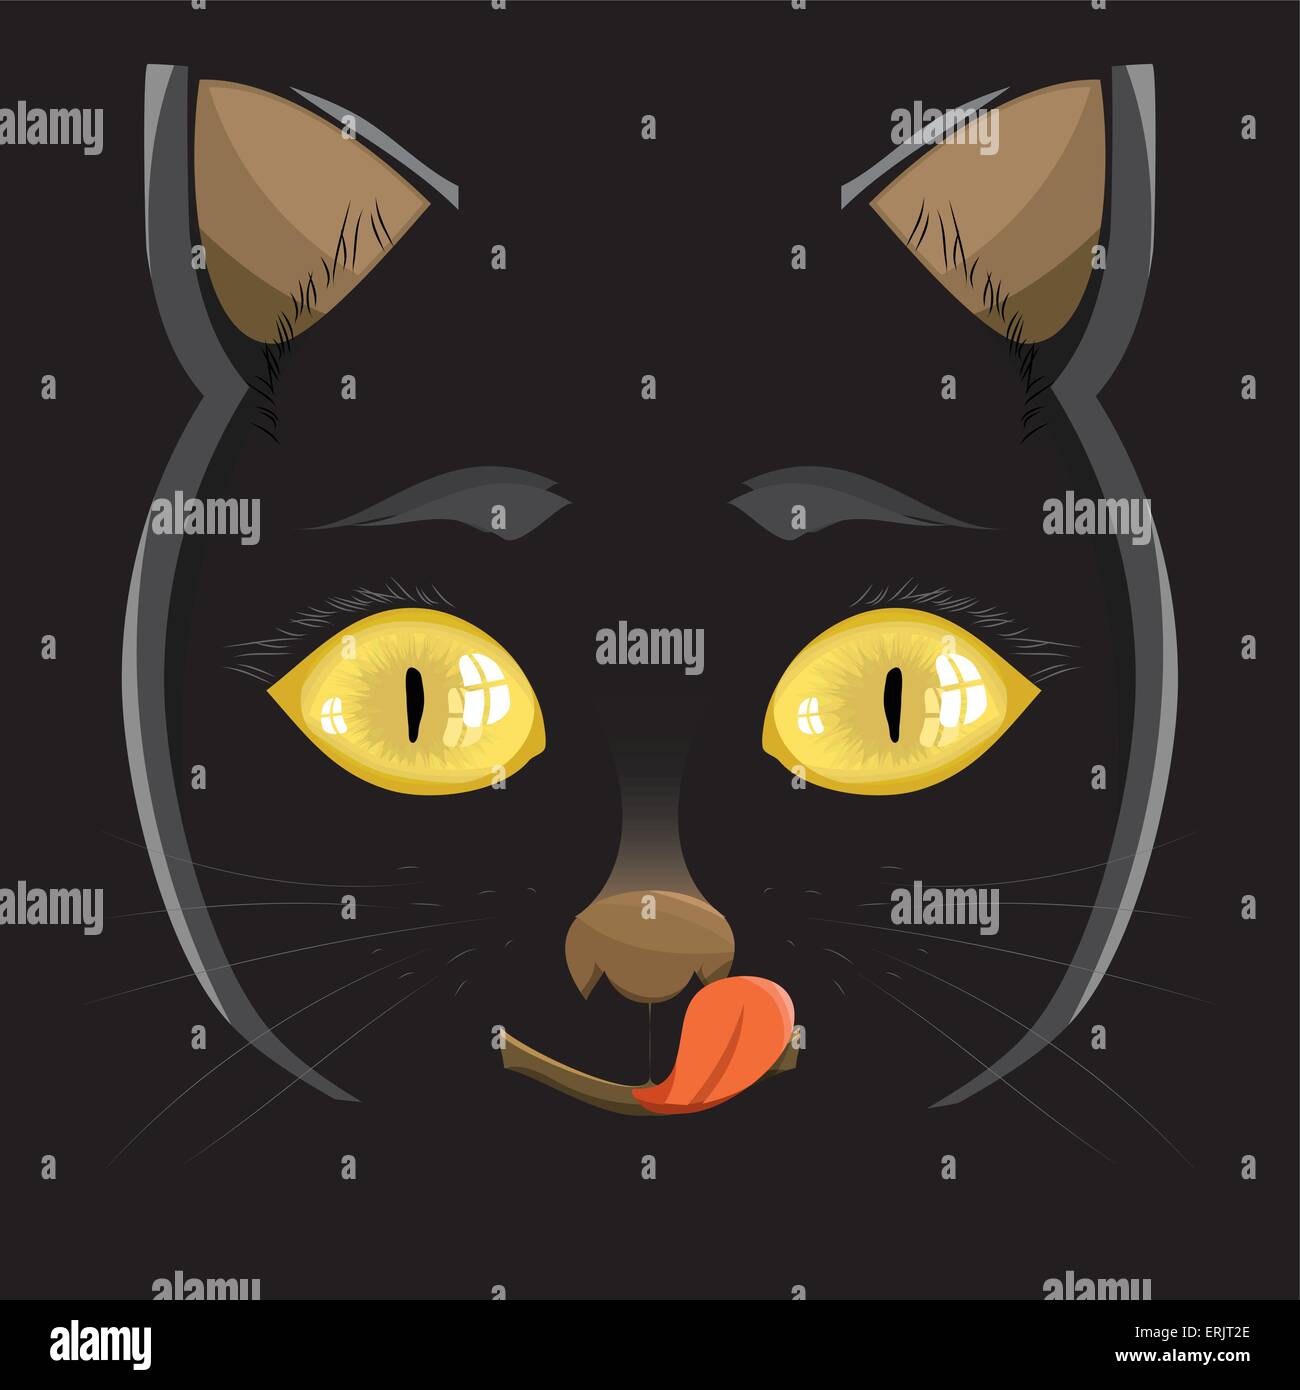 Vektor-Illustration. Kopf einer schwarzen Katze mit gelben Augen auf einem schwarzen Hintergrund Stock Vektor